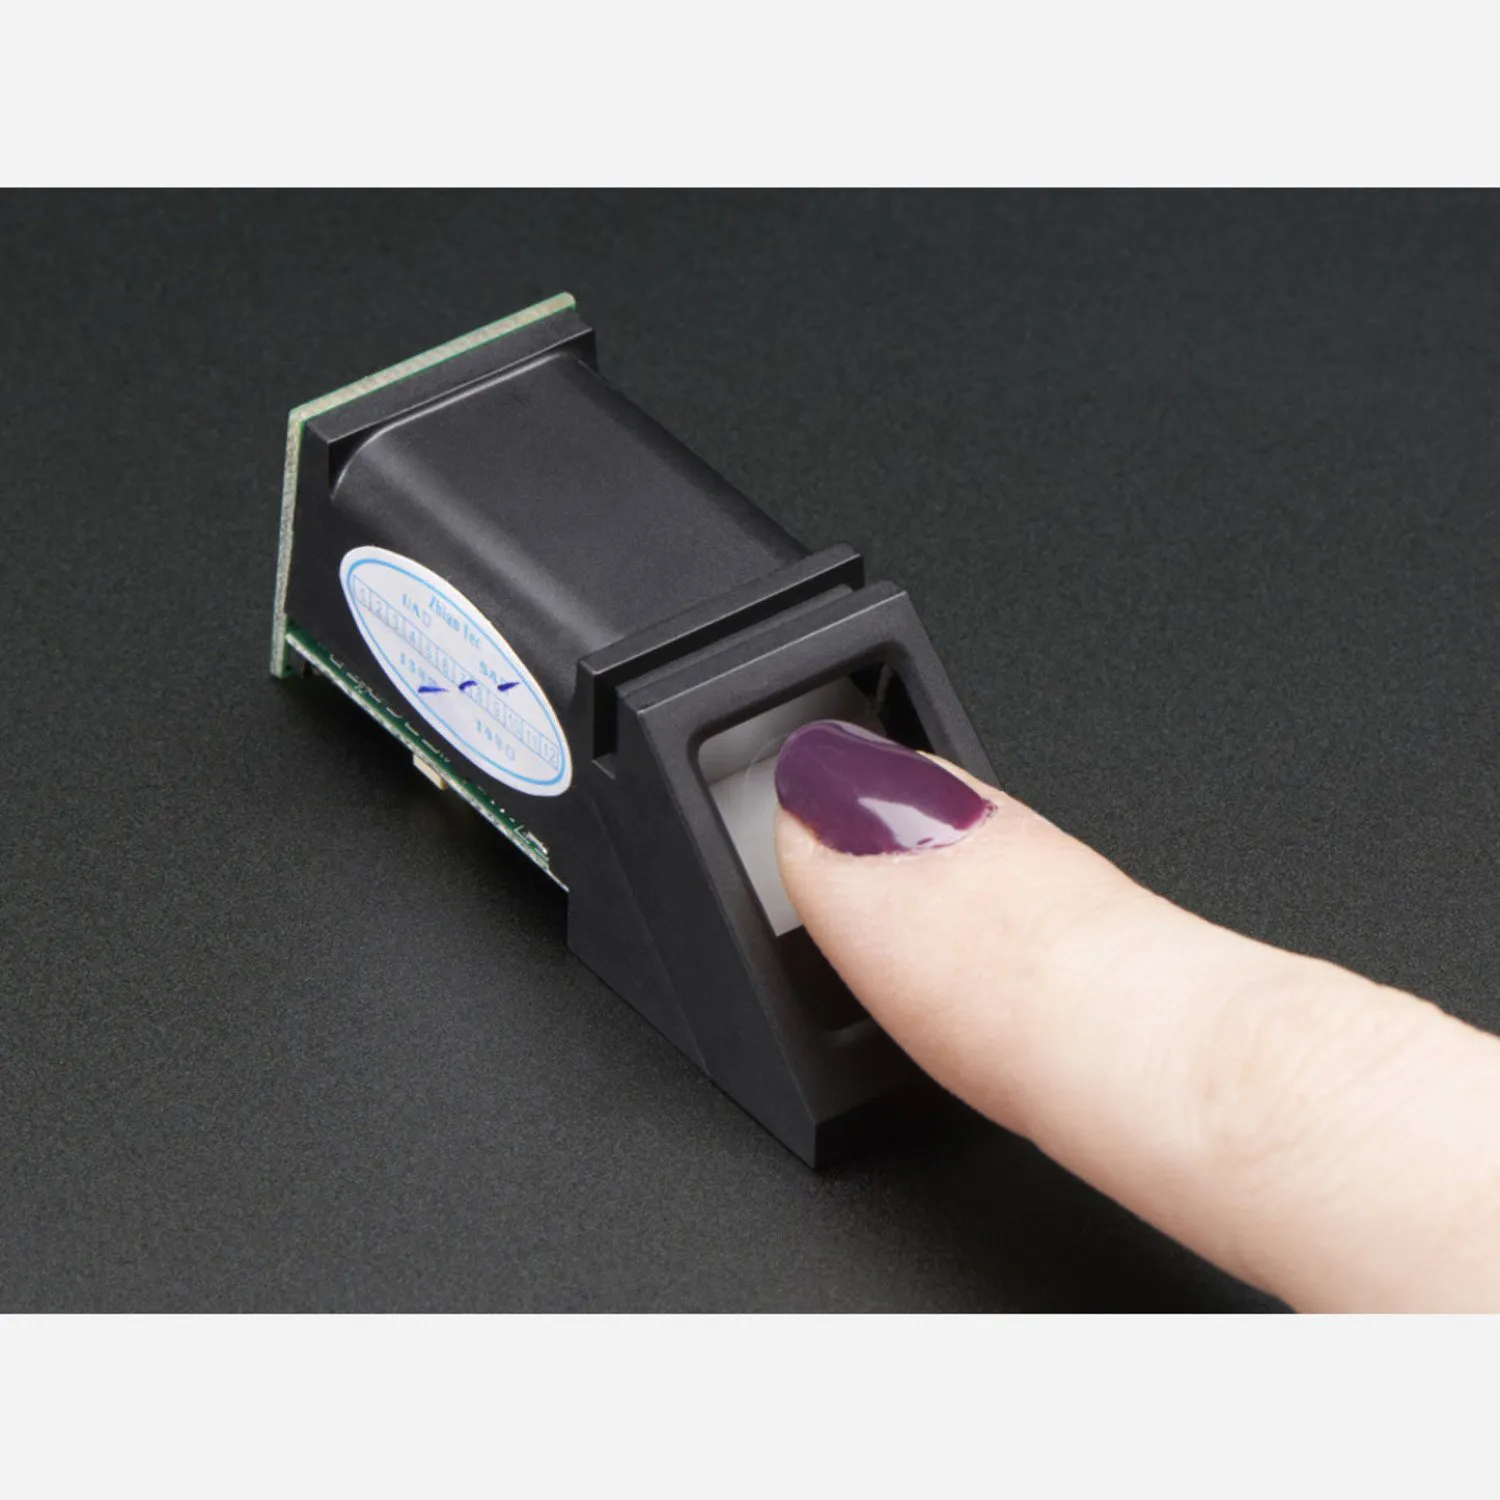 Photo of Fingerprint sensor